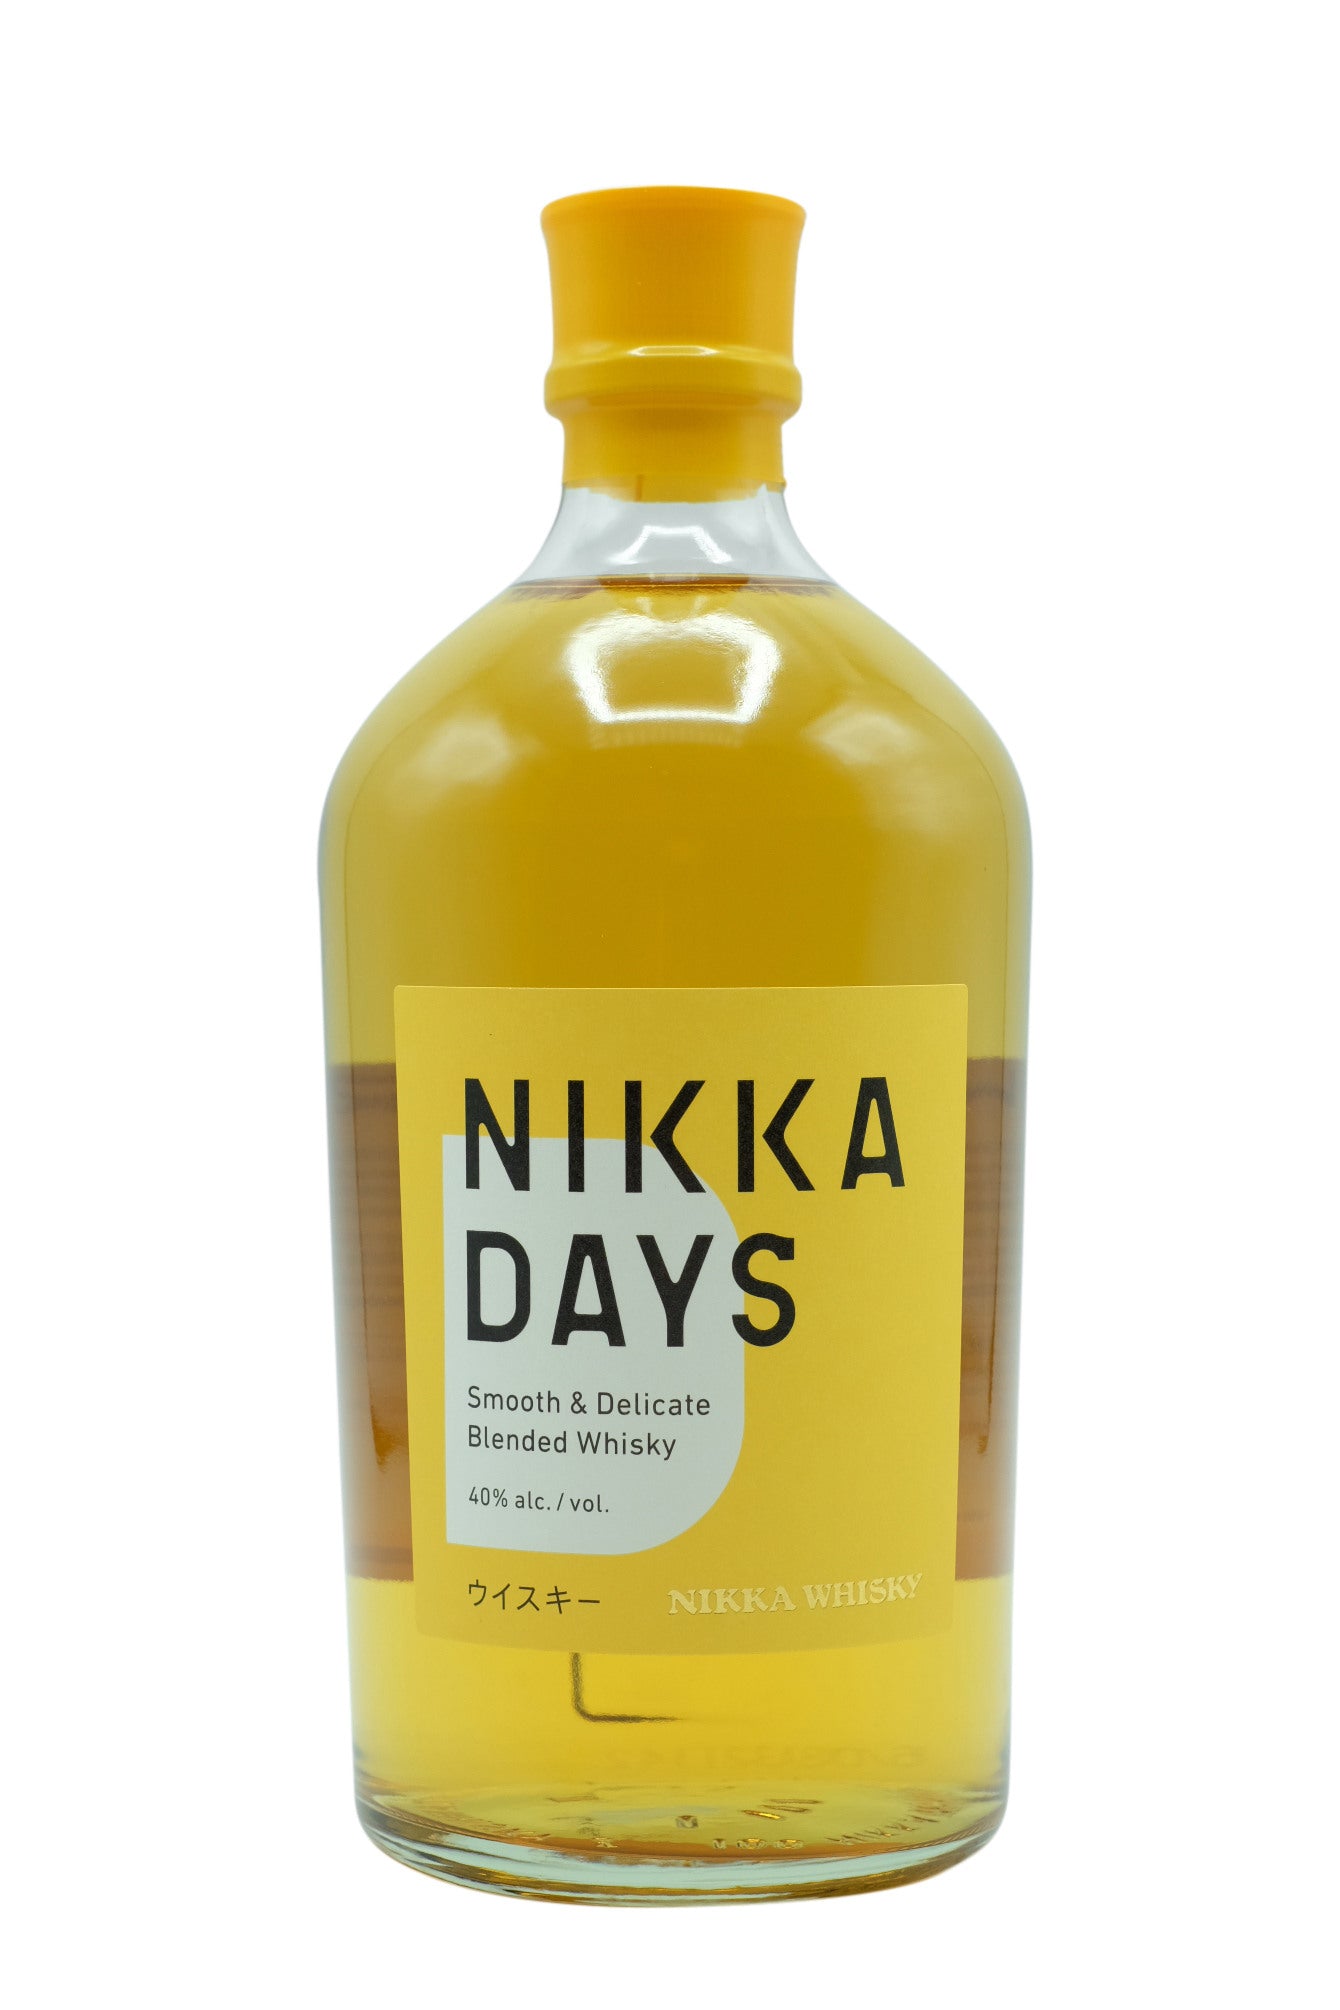 Nikka "Days" Blended Whisky